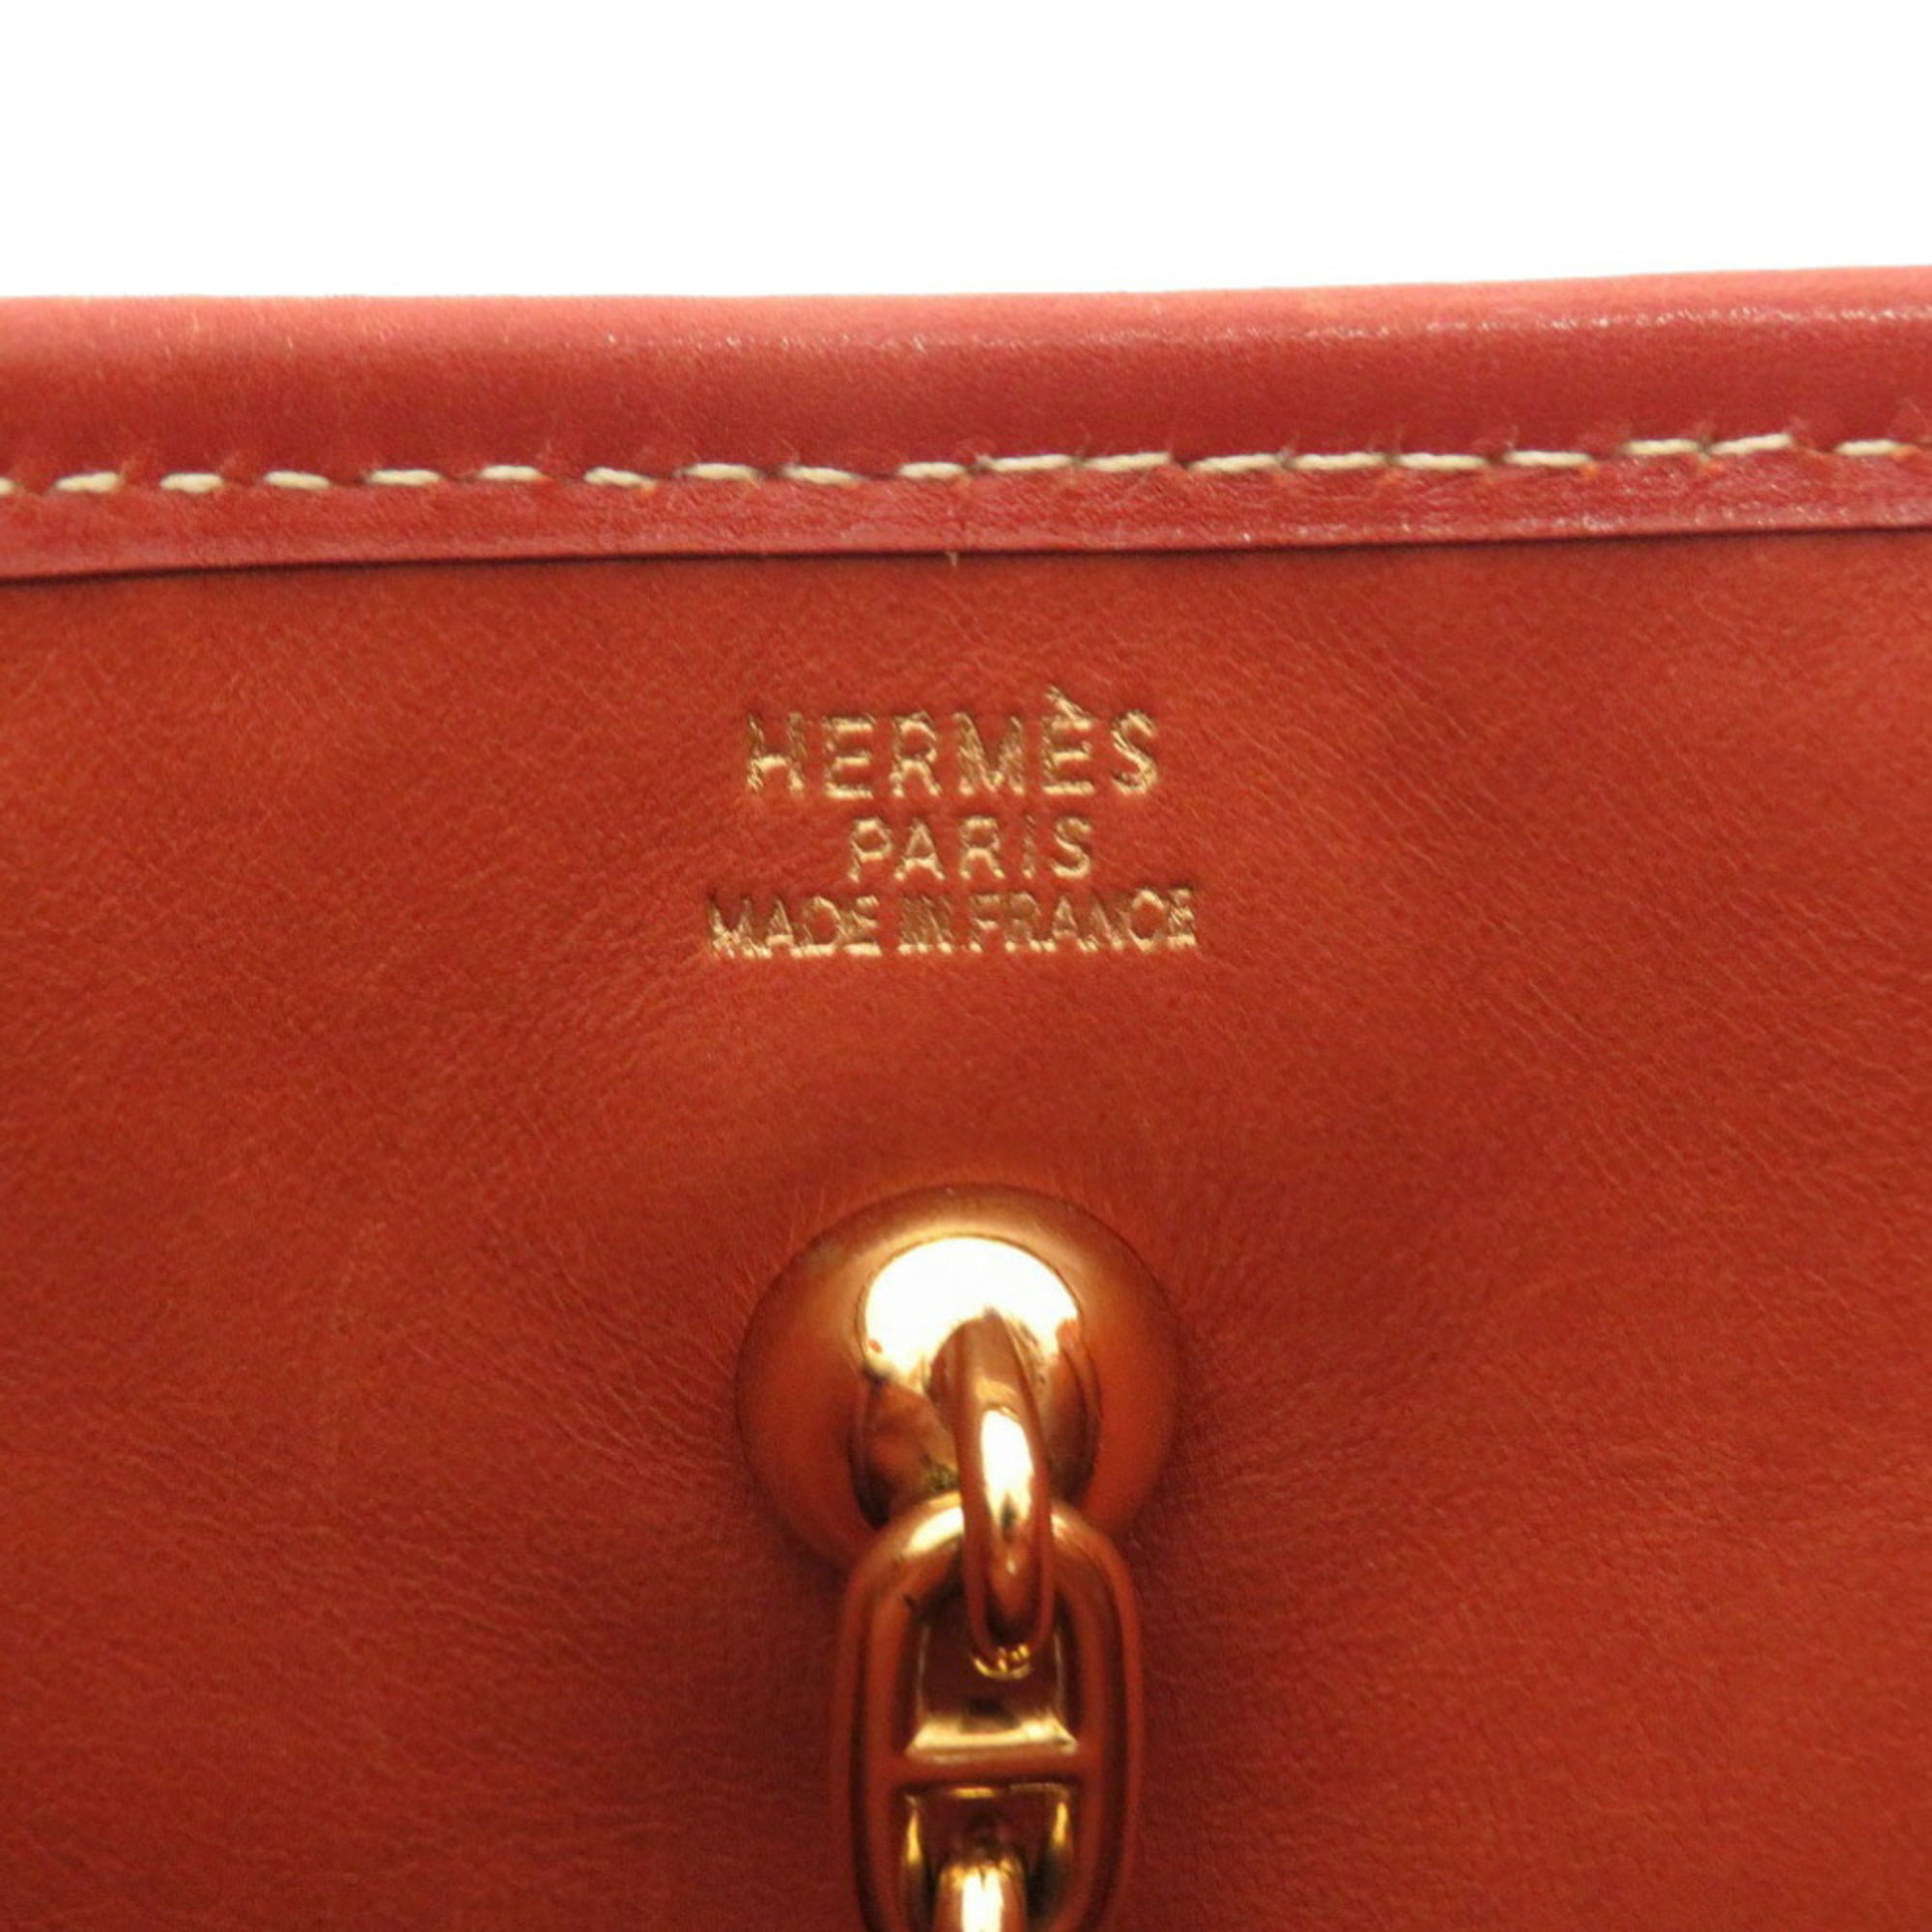 Authenticated used Hermes Vespa PM Straw Beige Shoulder Bag Brown, Adult Unisex, Size: (HxWxD): 27cm x 28cm x 8cm / 10.62'' x 11.02'' x 3.14'', Strap